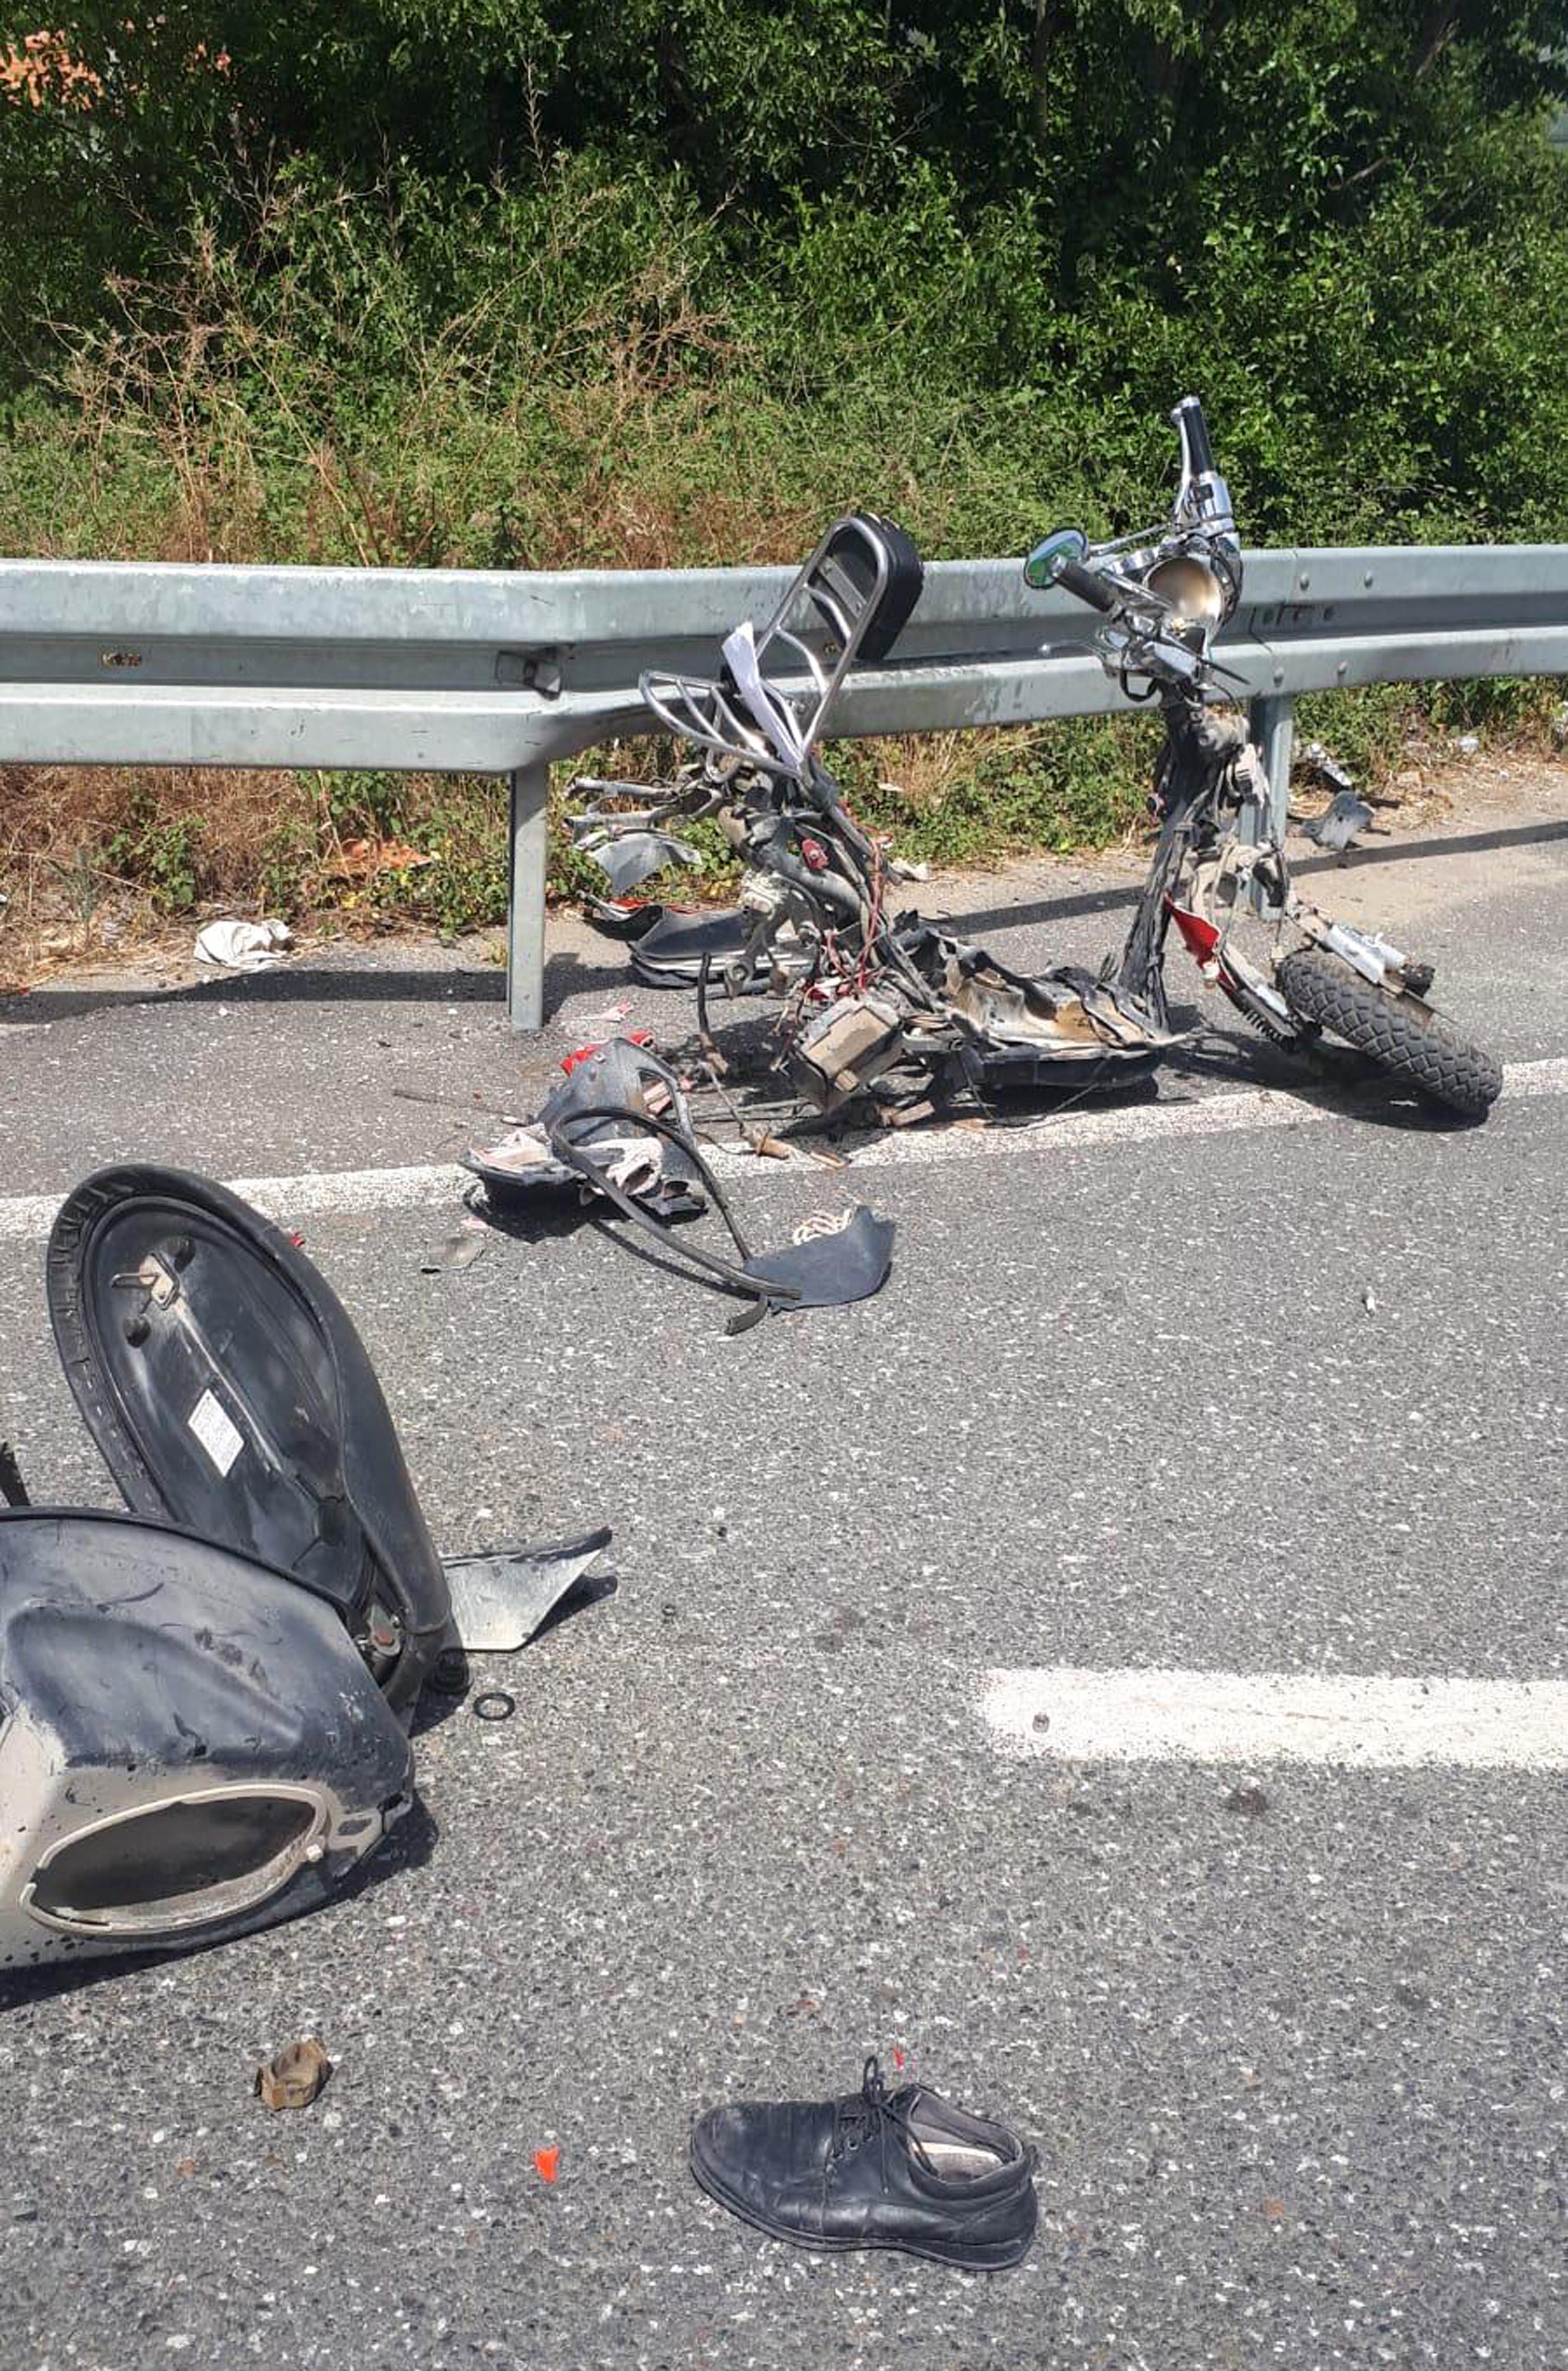 Muğlada otomobil ile motosiklet çarpıştı: 1 ölü